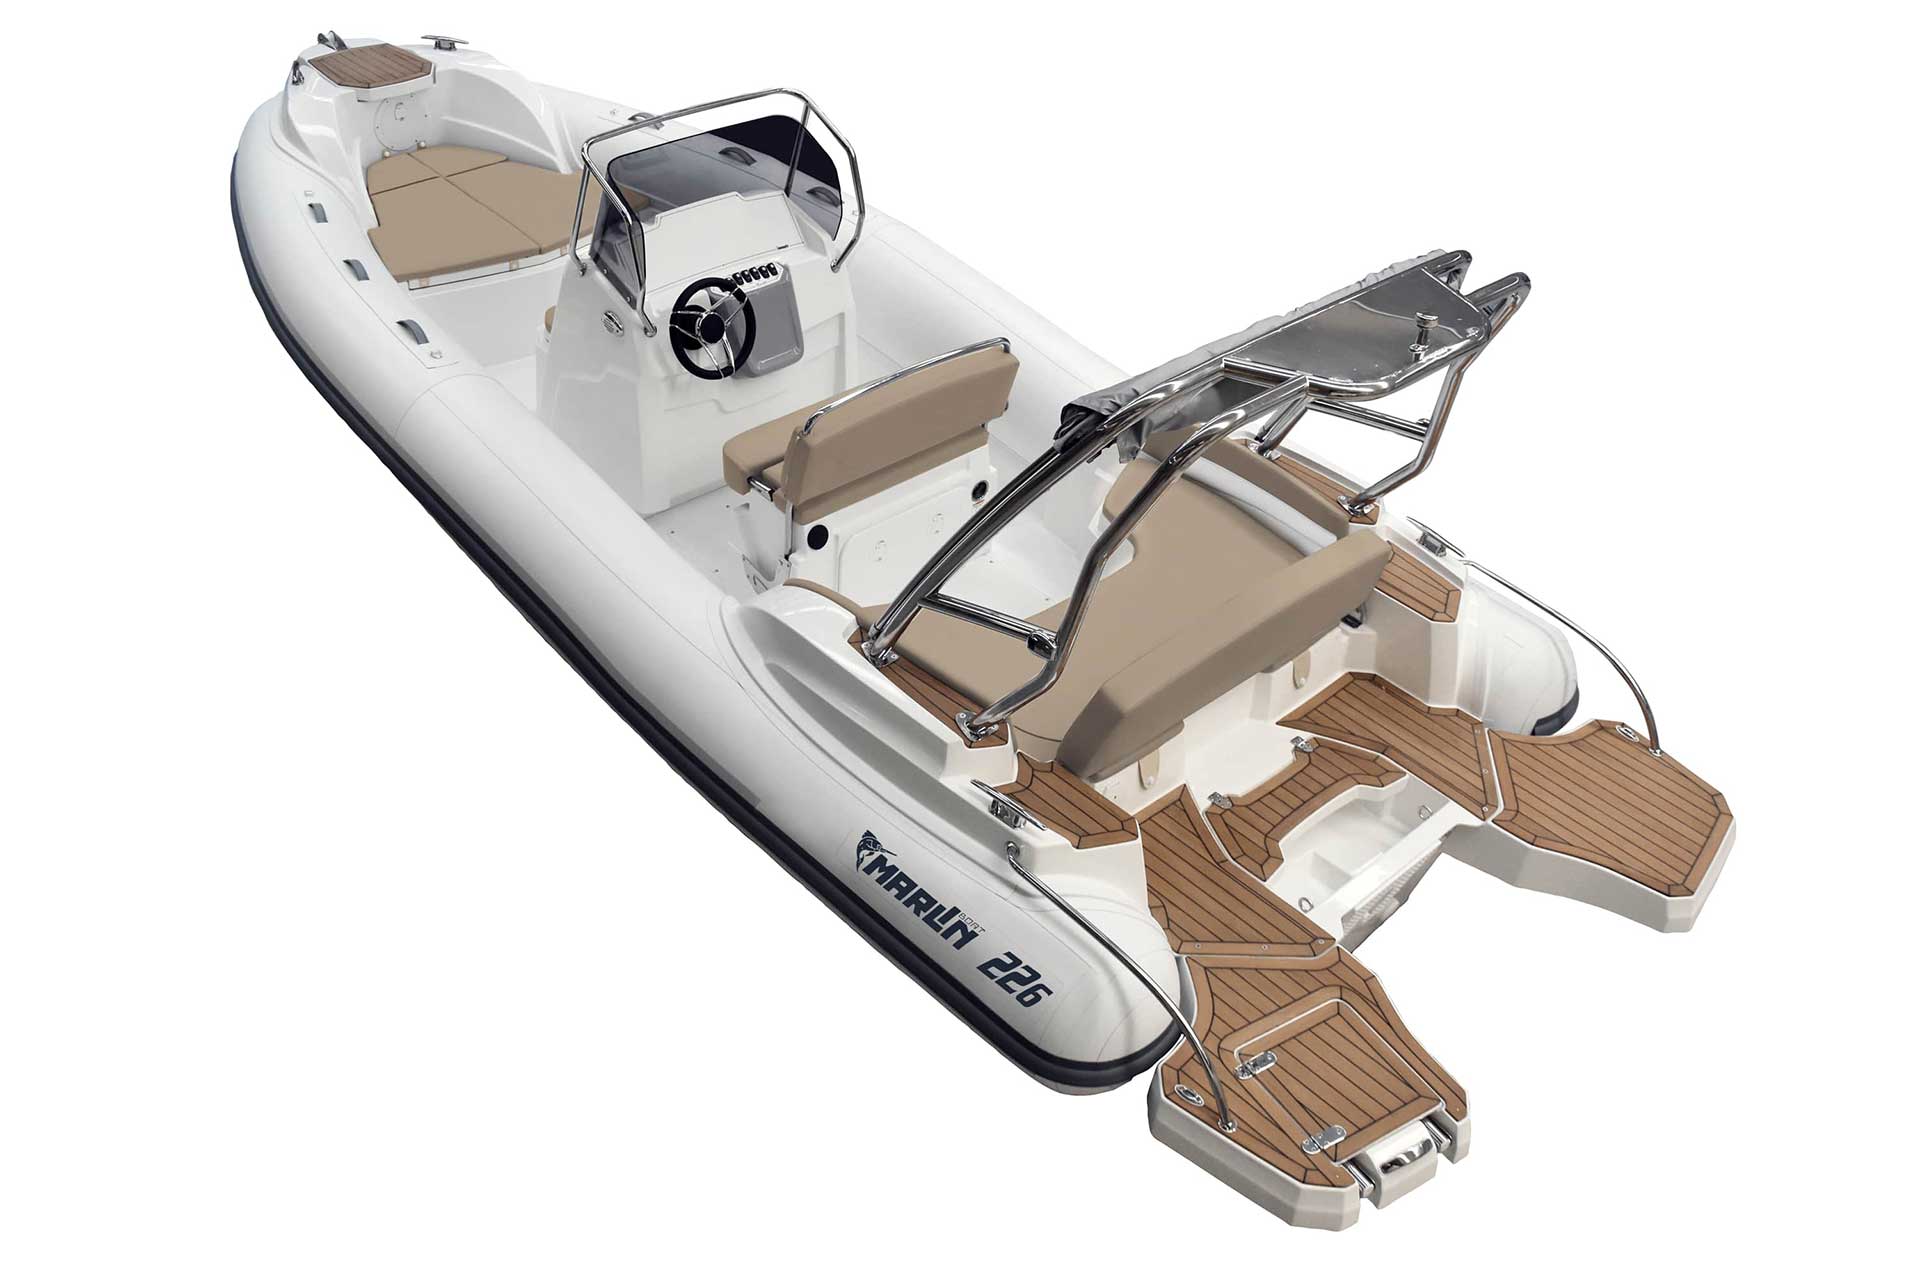 Marlin Boat - Gommone Fuoribordo Modello 226